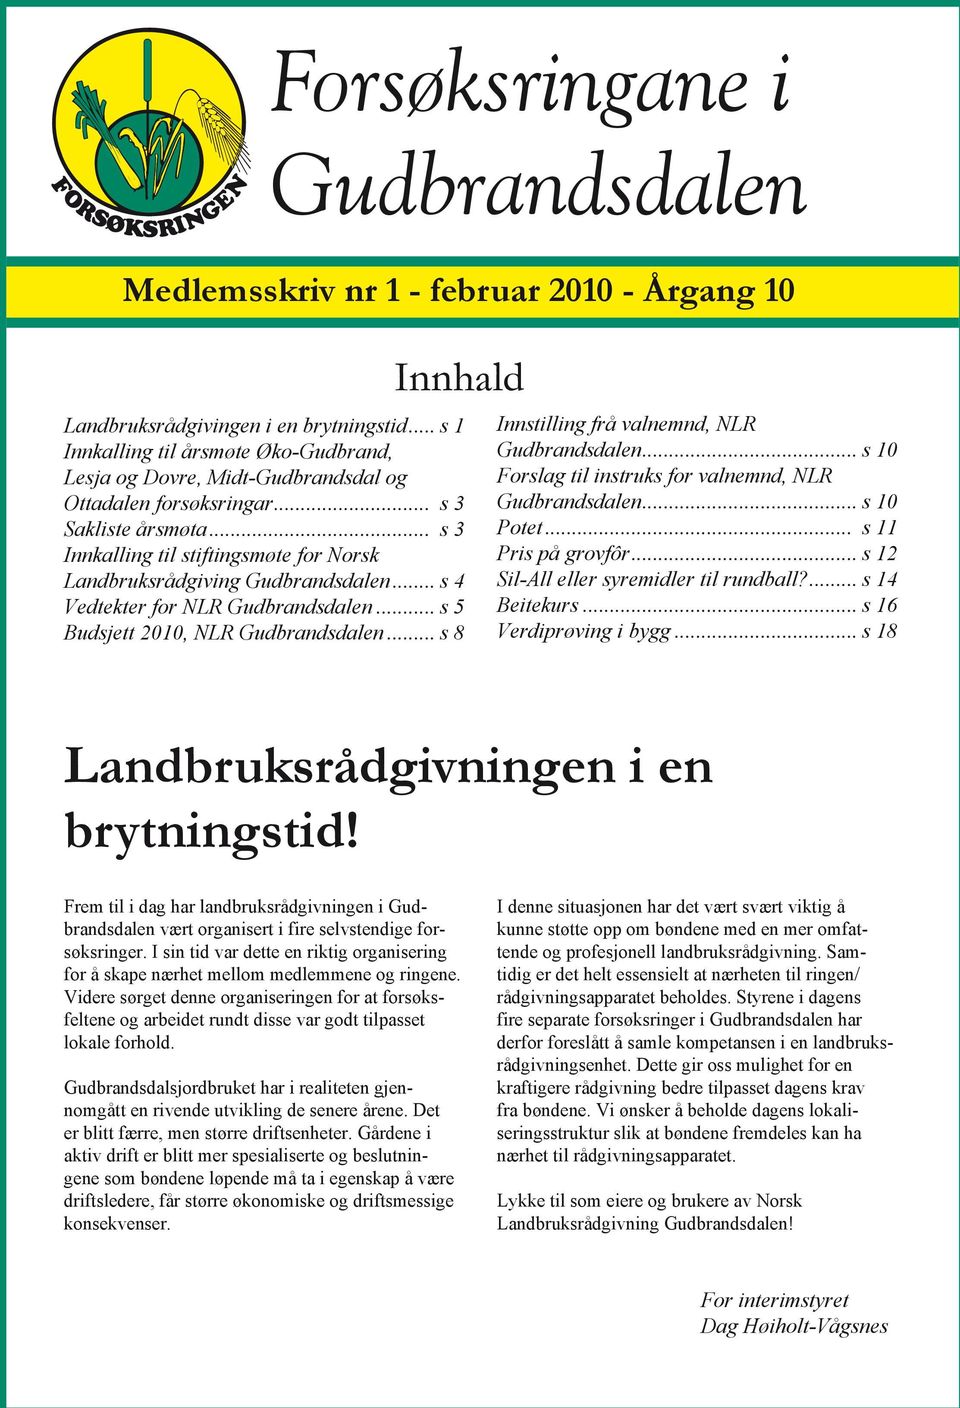 .. s 3 Innkalling til stiftingsmøte for Norsk Landbruksrådgiving Gudbrandsdalen... s 4 Vedtekter for NLR Gudbrandsdalen... s 5 Budsjett 2010, NLR Gudbrandsdalen.